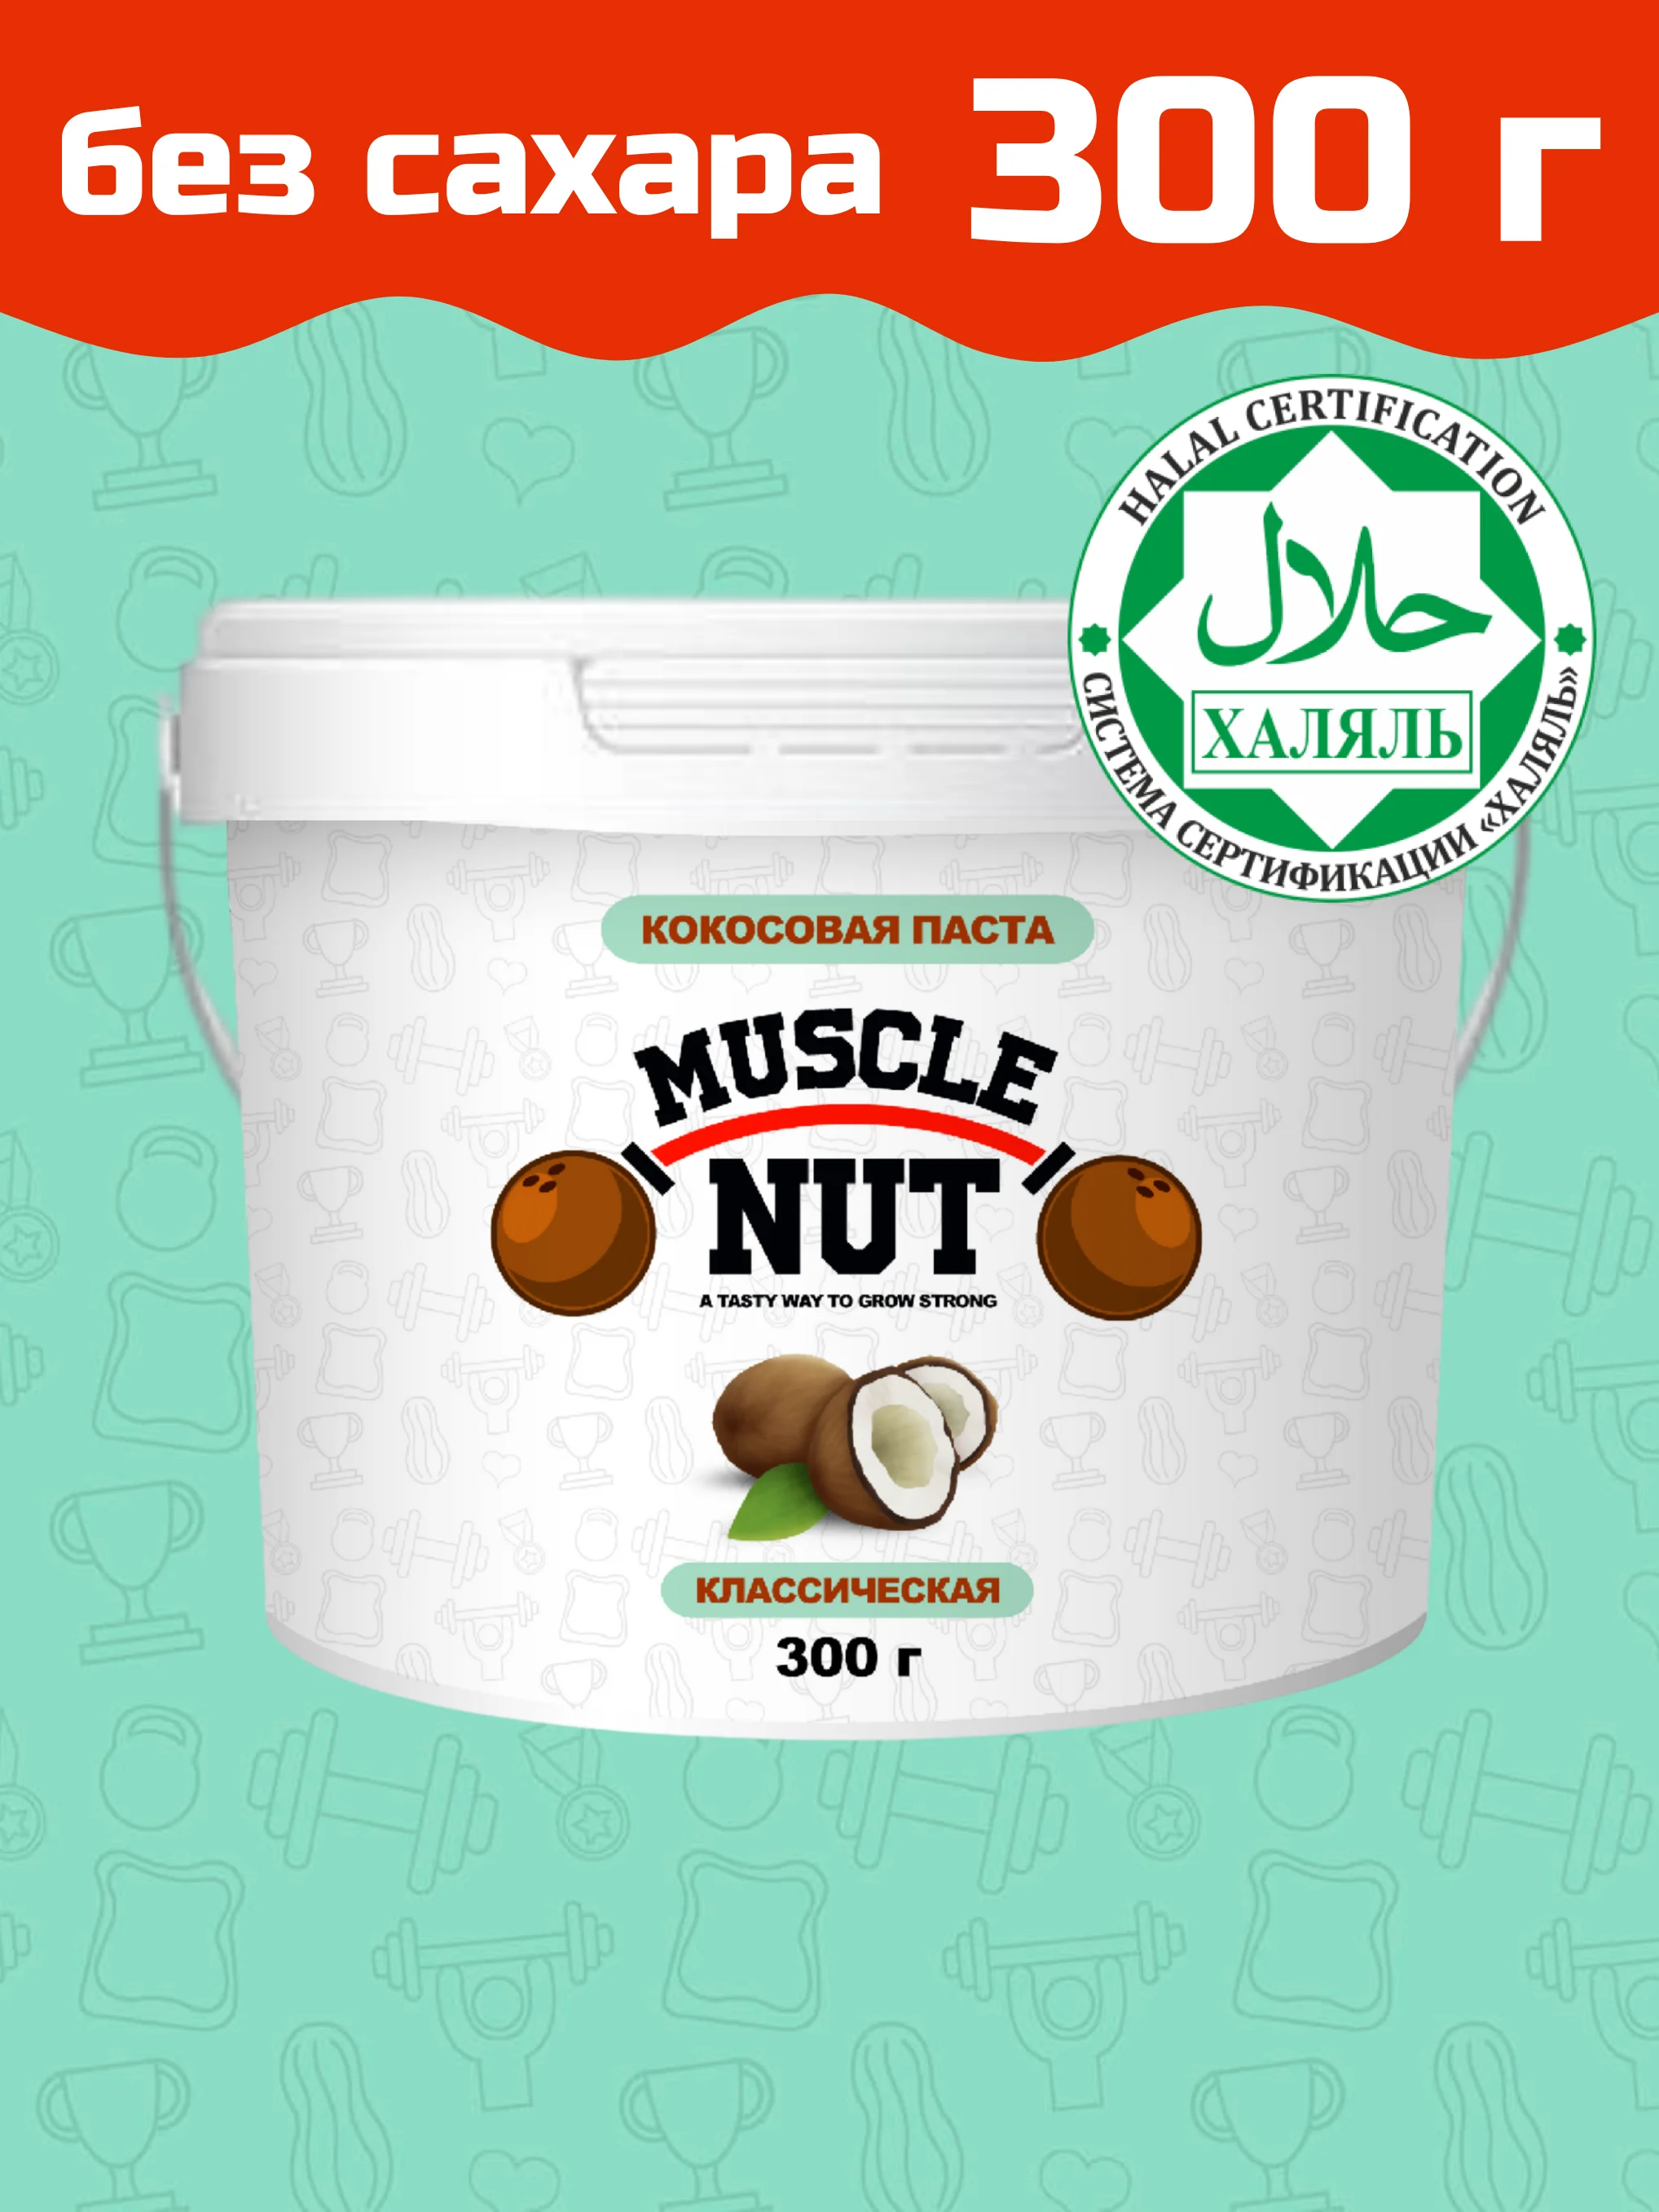 Кокосовая паста Muscle Nut классическая без сахара натуральная питательная 300 г -